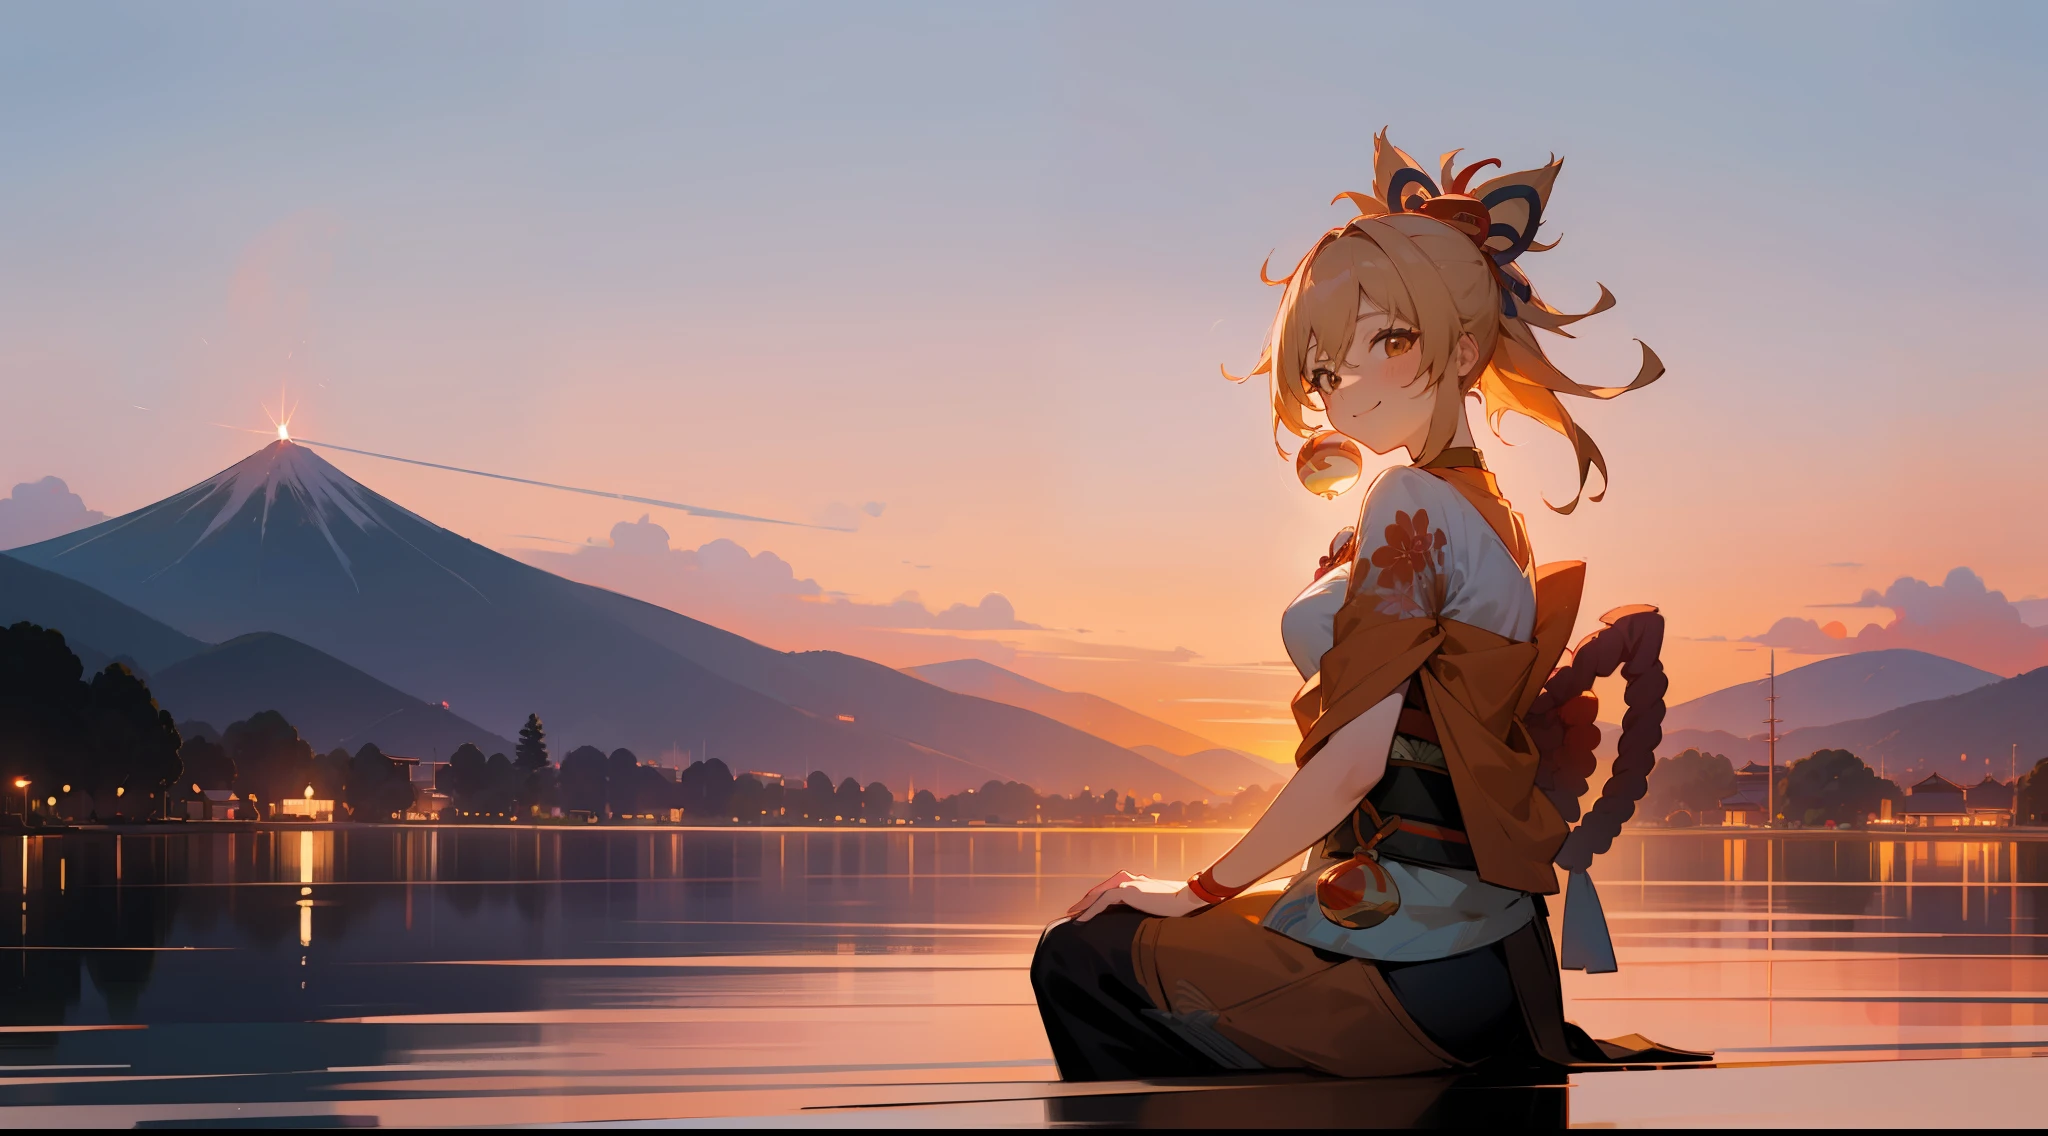 Yoimiya, sorridente, adulto, amadureceu, ilustração, 1 garota, fogos de artifício, montanha, cenário, pôr do sol, crepúsculo, lindo, Céu dourado, sentado em uma enseada, acenando, arvore Sakura, a view of a japanese town at pôr do sol